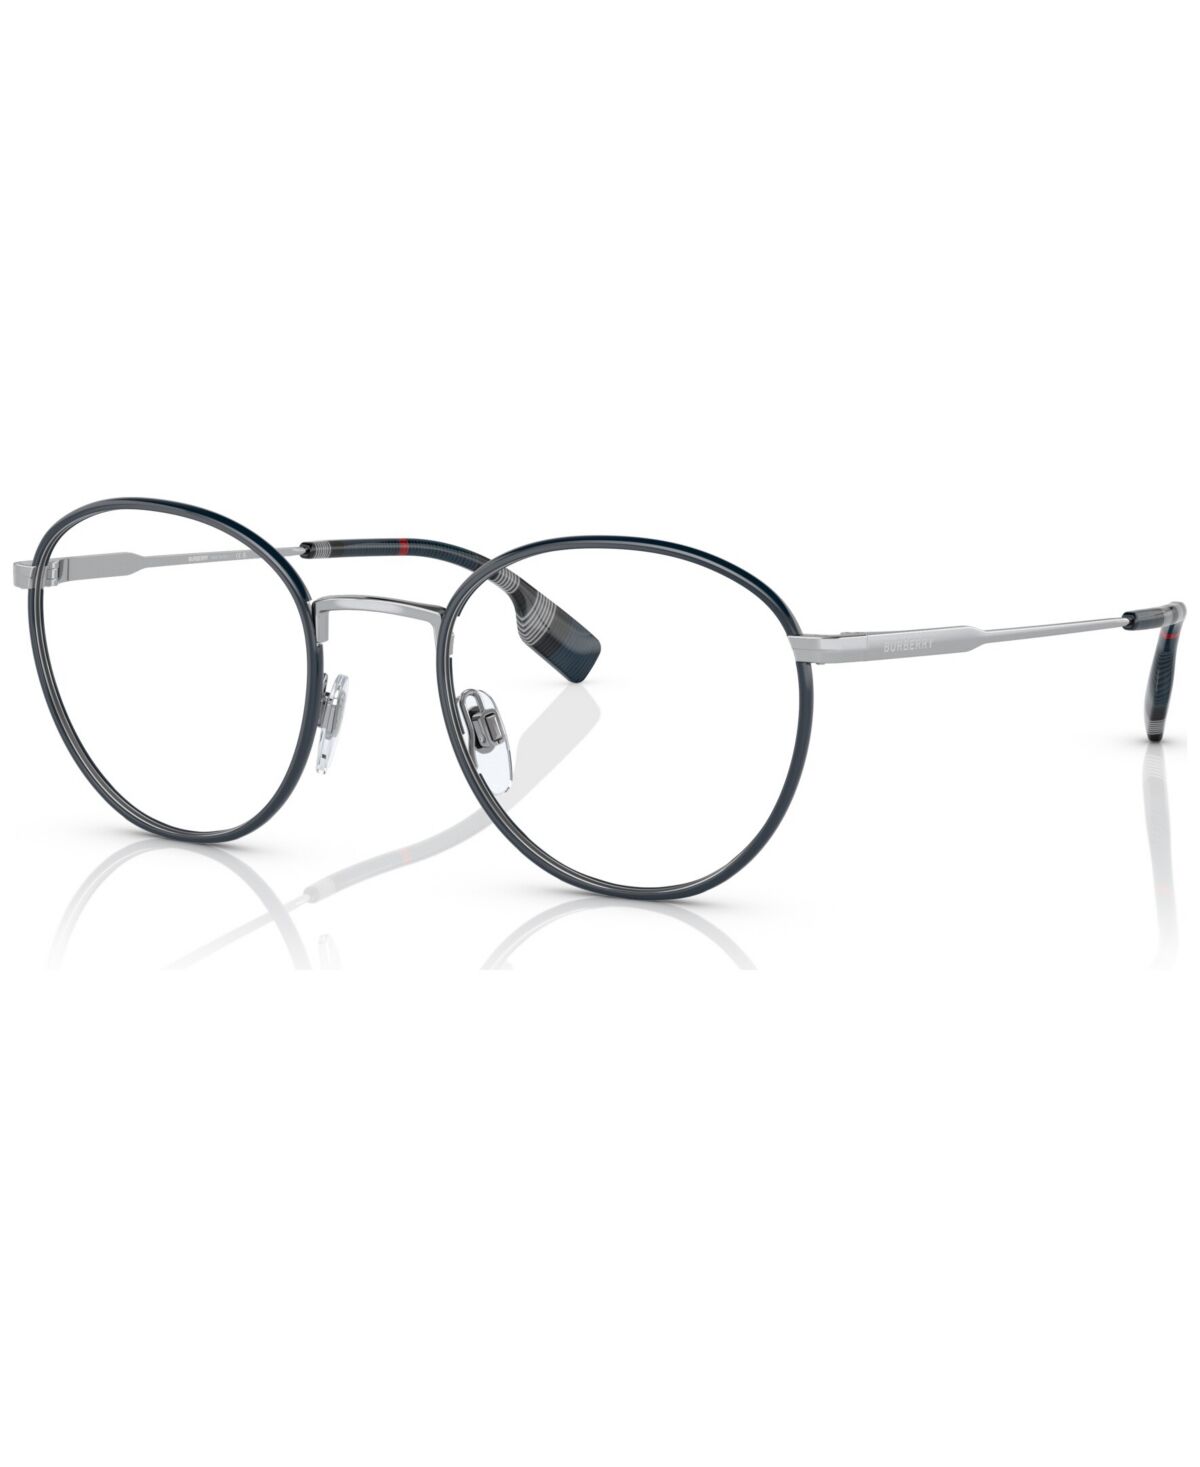 Burberry Men's Hugo Eyeglasses, BE1373 51 - Silver, Blue